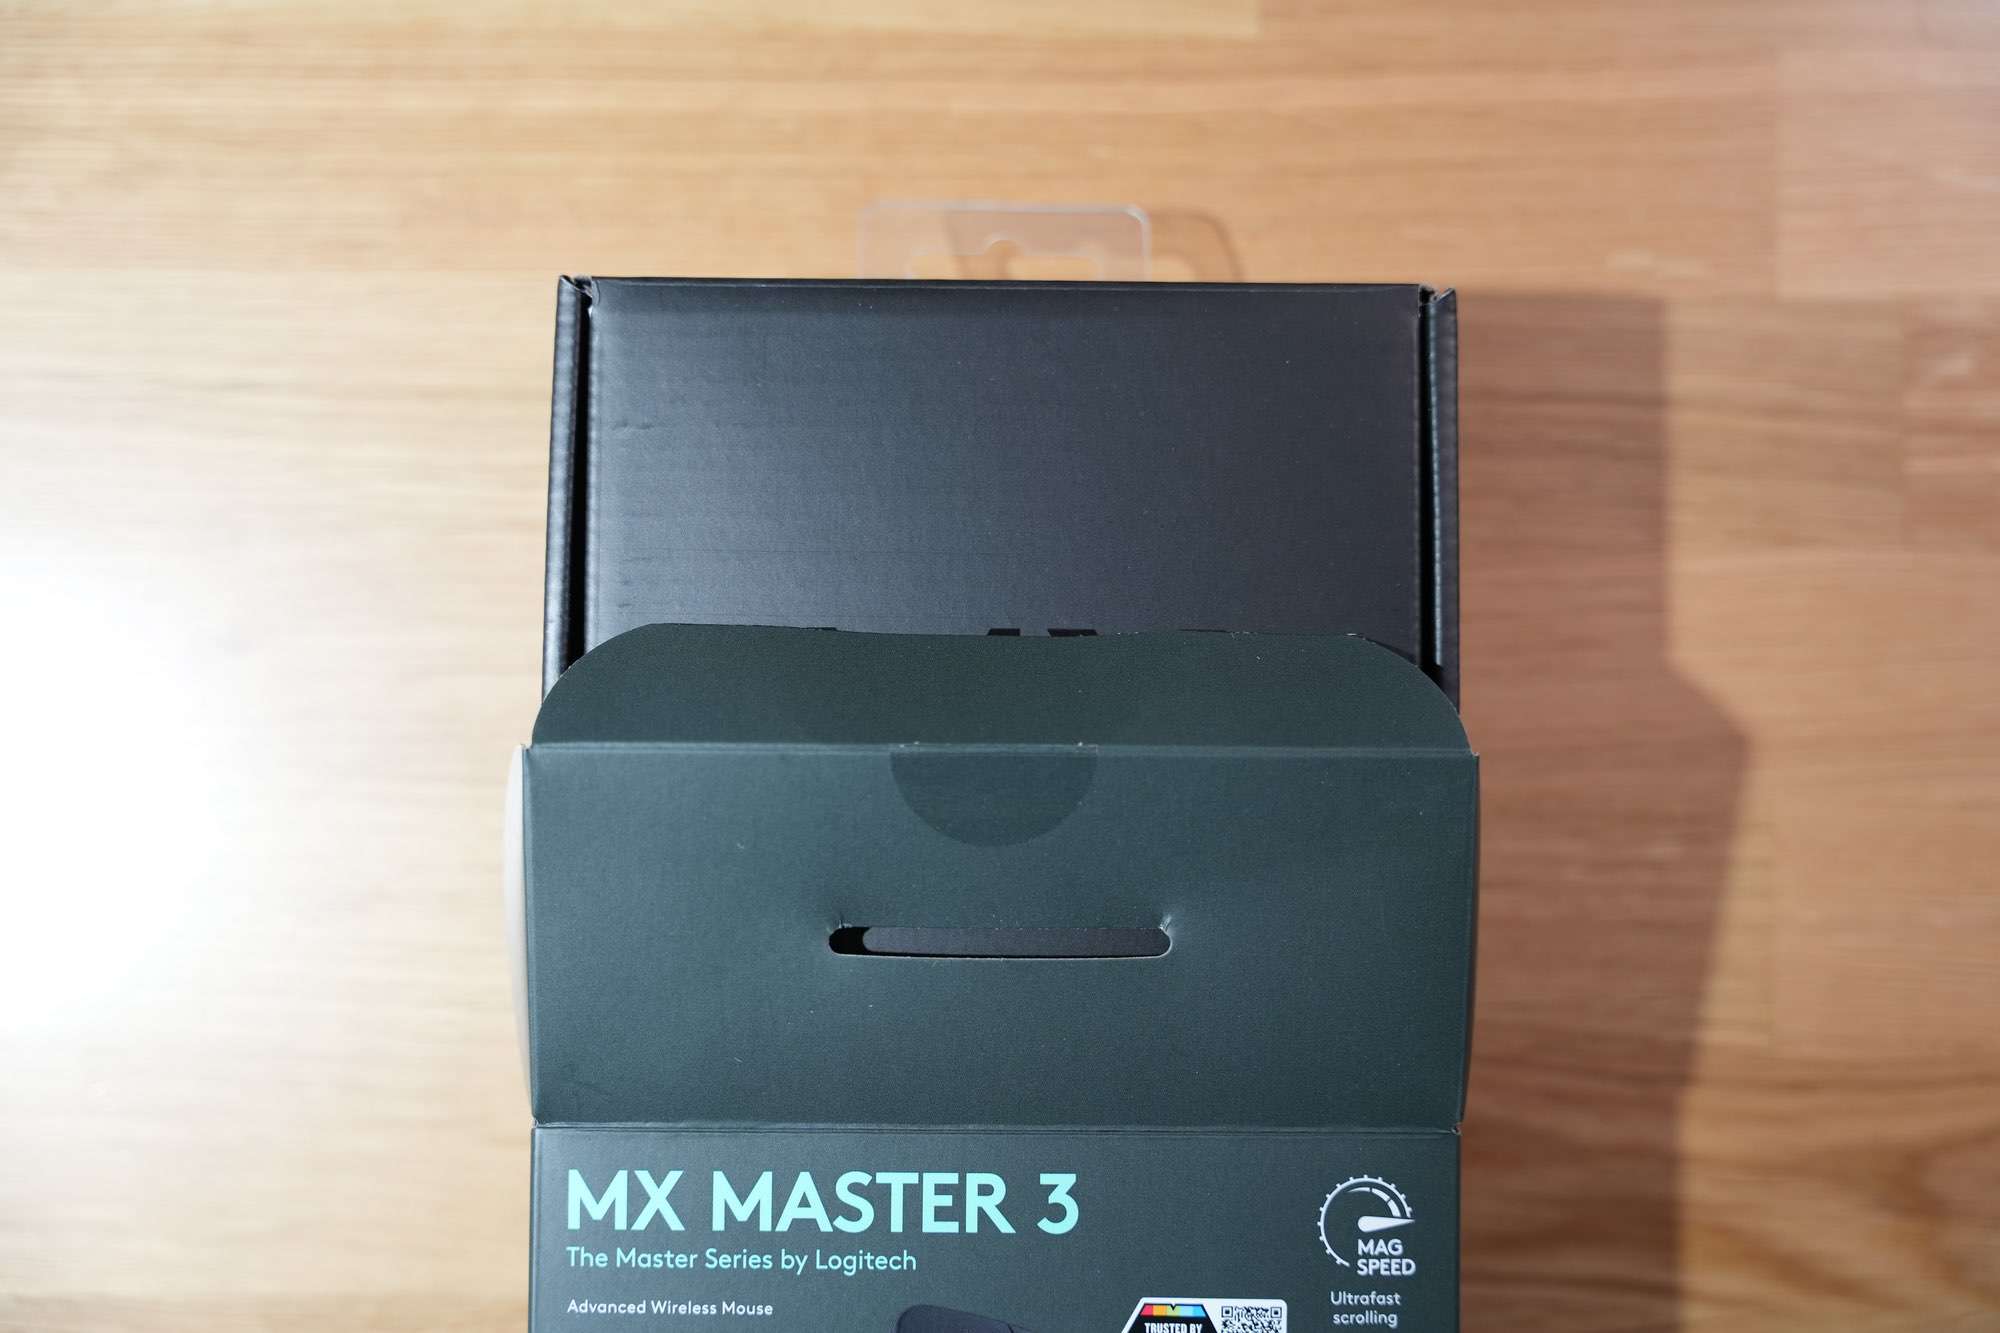 รีวิว Logitech MX Master 3 ไม่มี S ก็เปรี้ยวได้